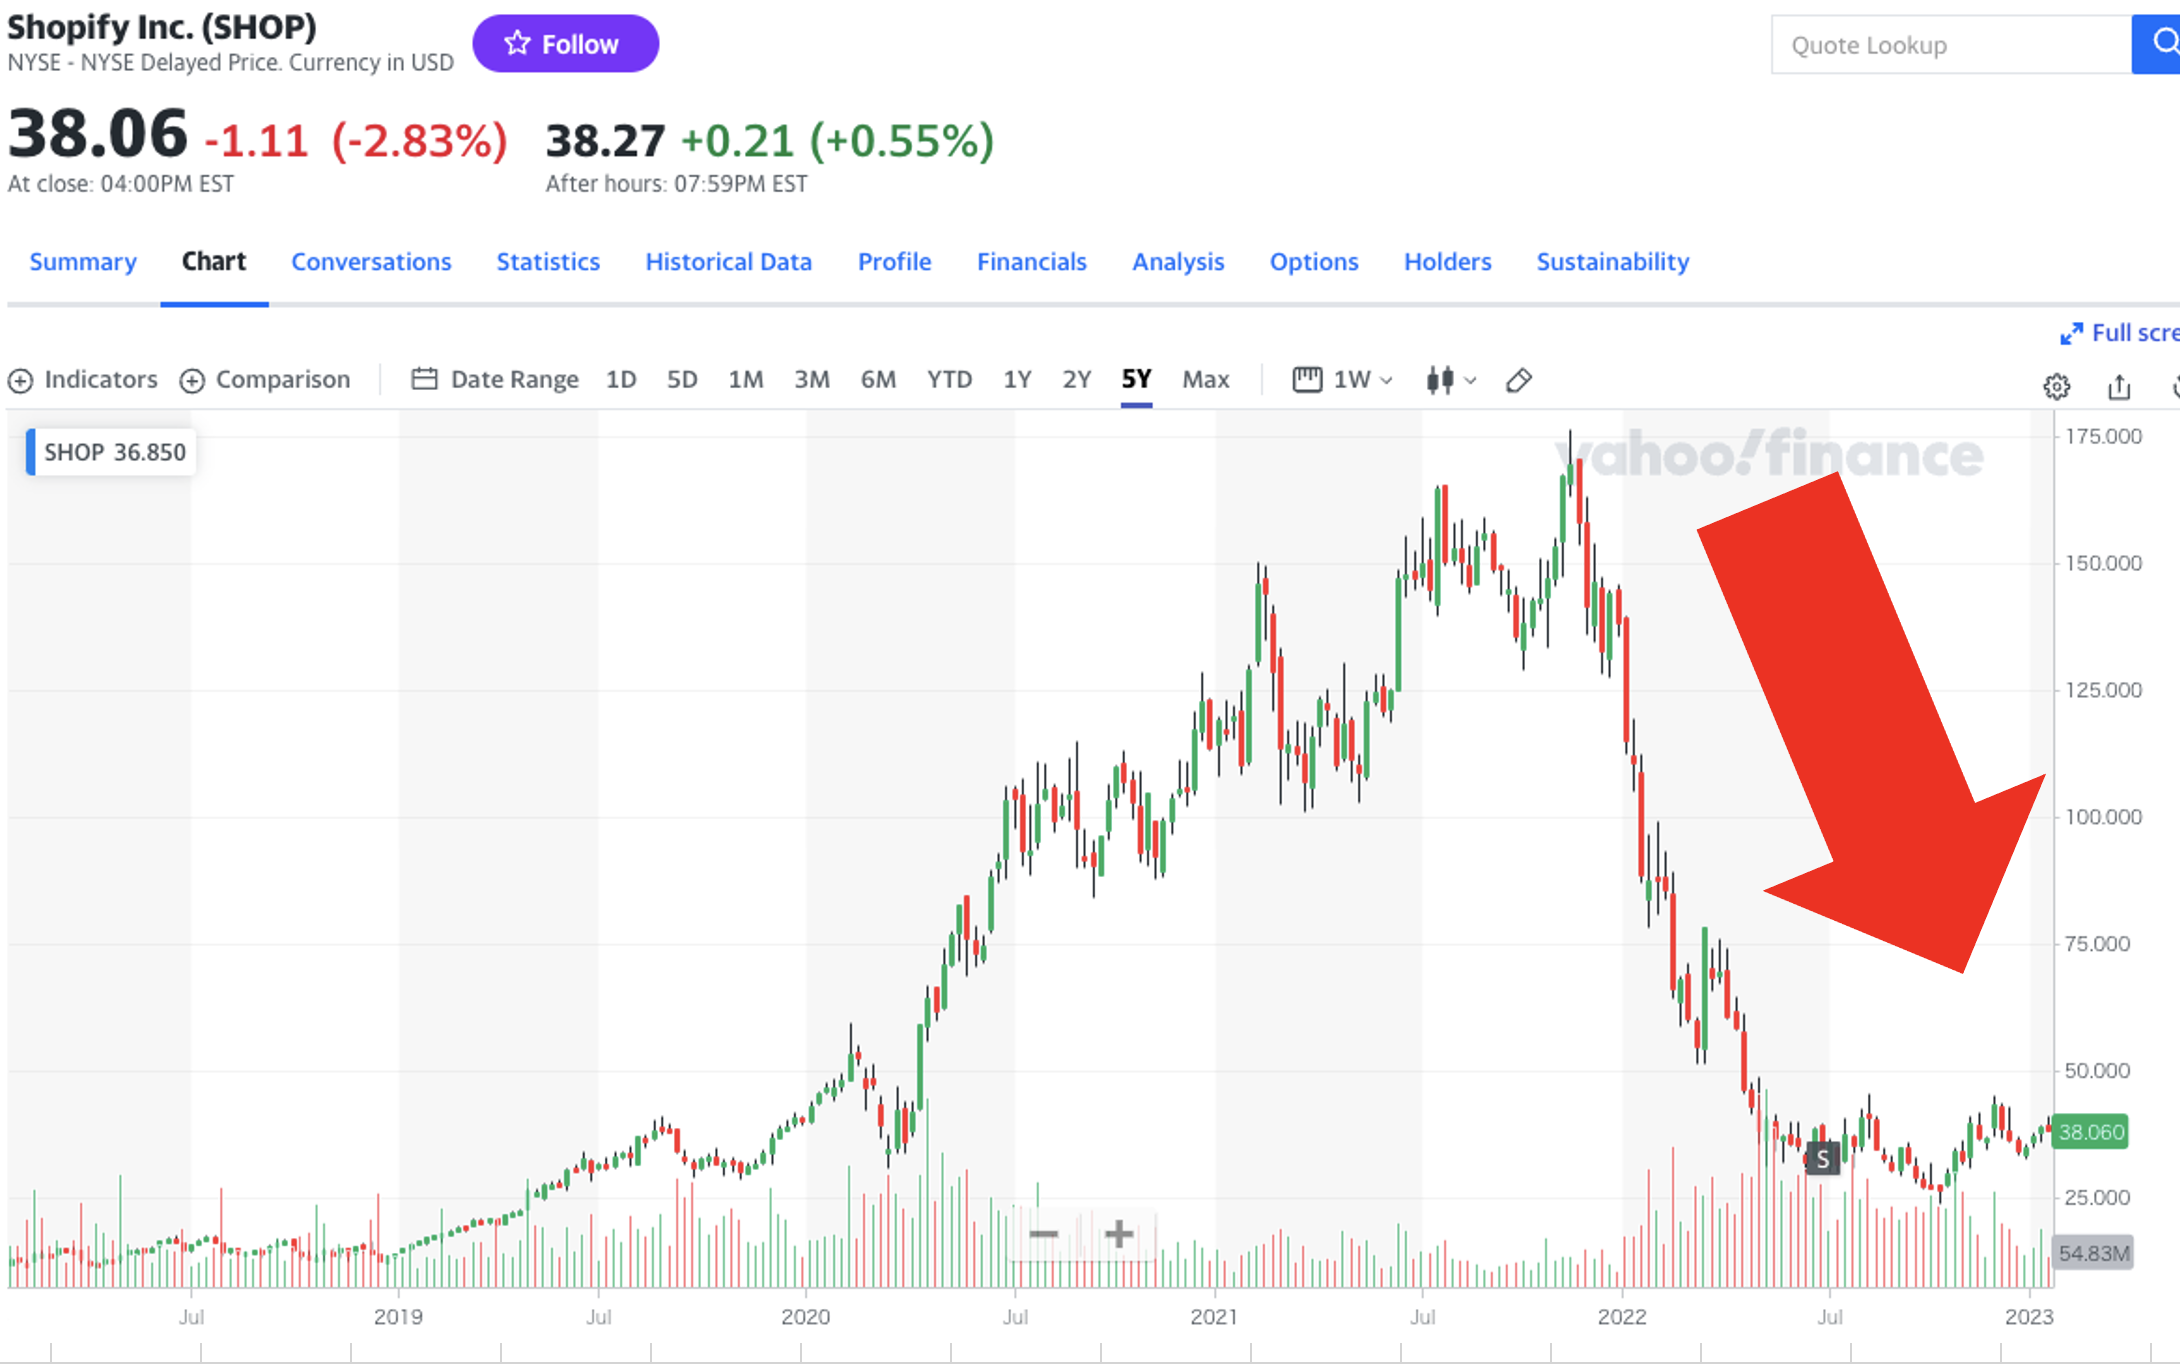 Shopifyの株価の推移